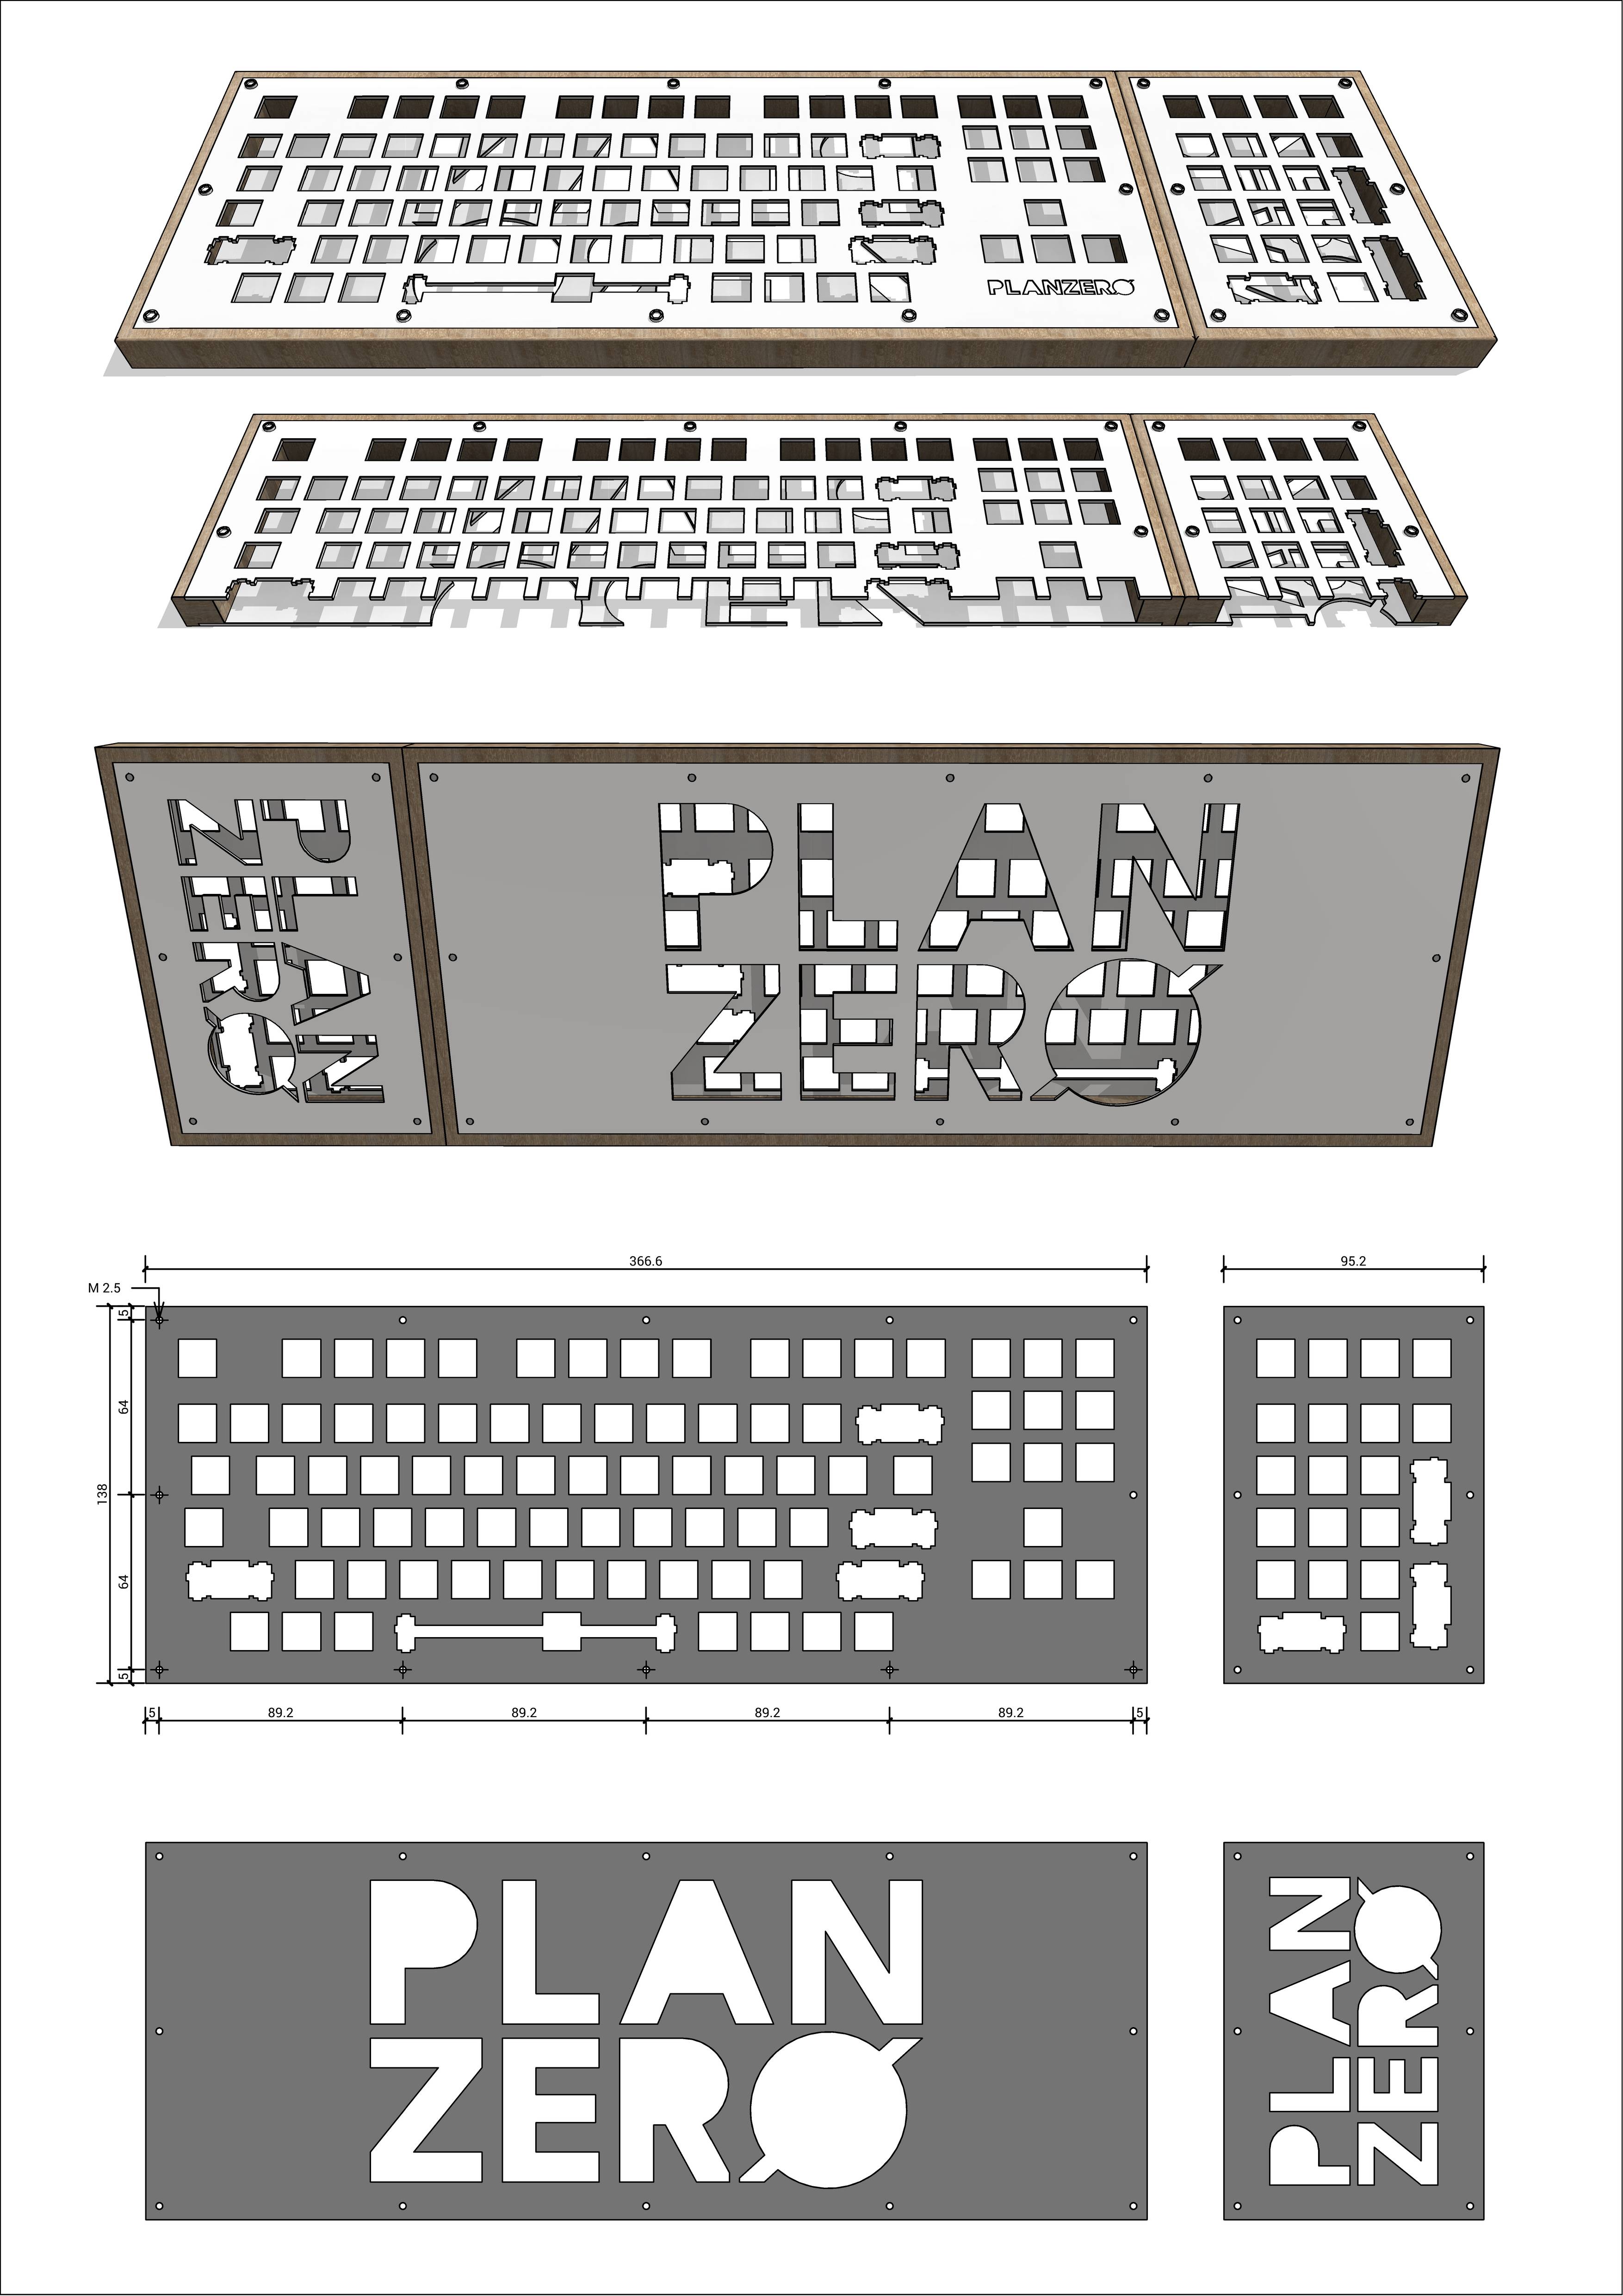 PZ keyboard.jpg